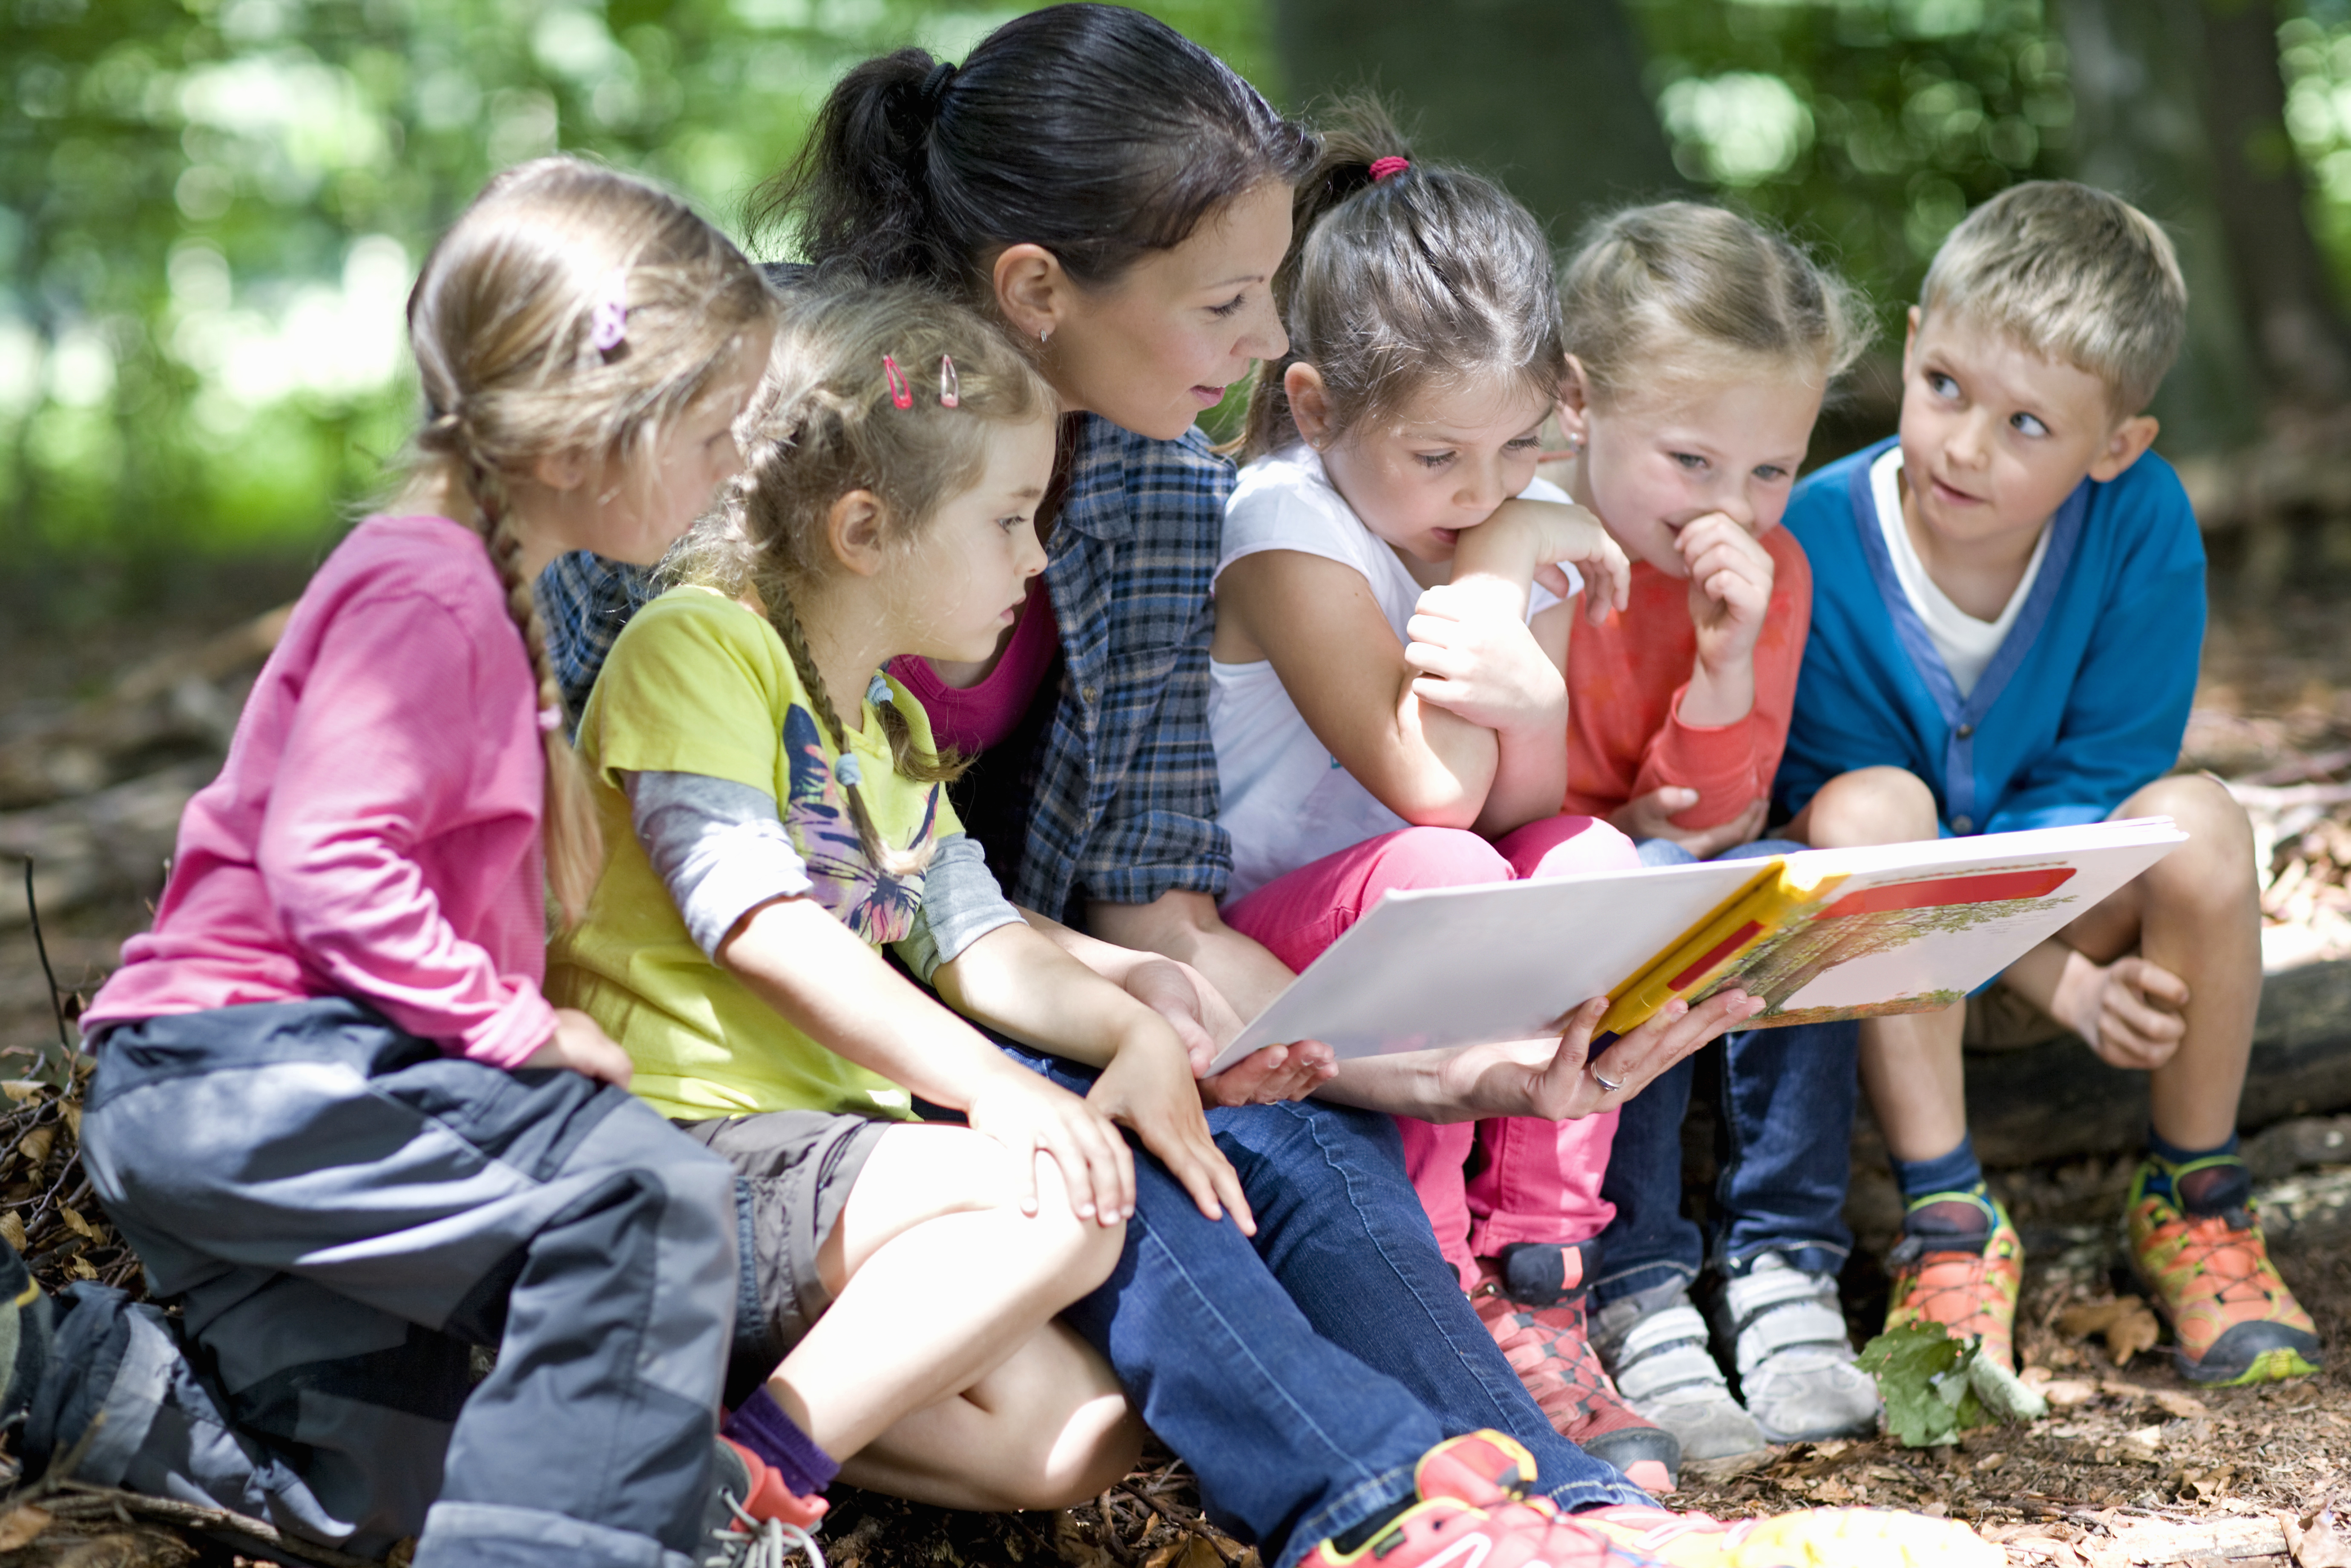 Frau liest kleinen Kindern ein Buch vor | Quelle: Shutterstock